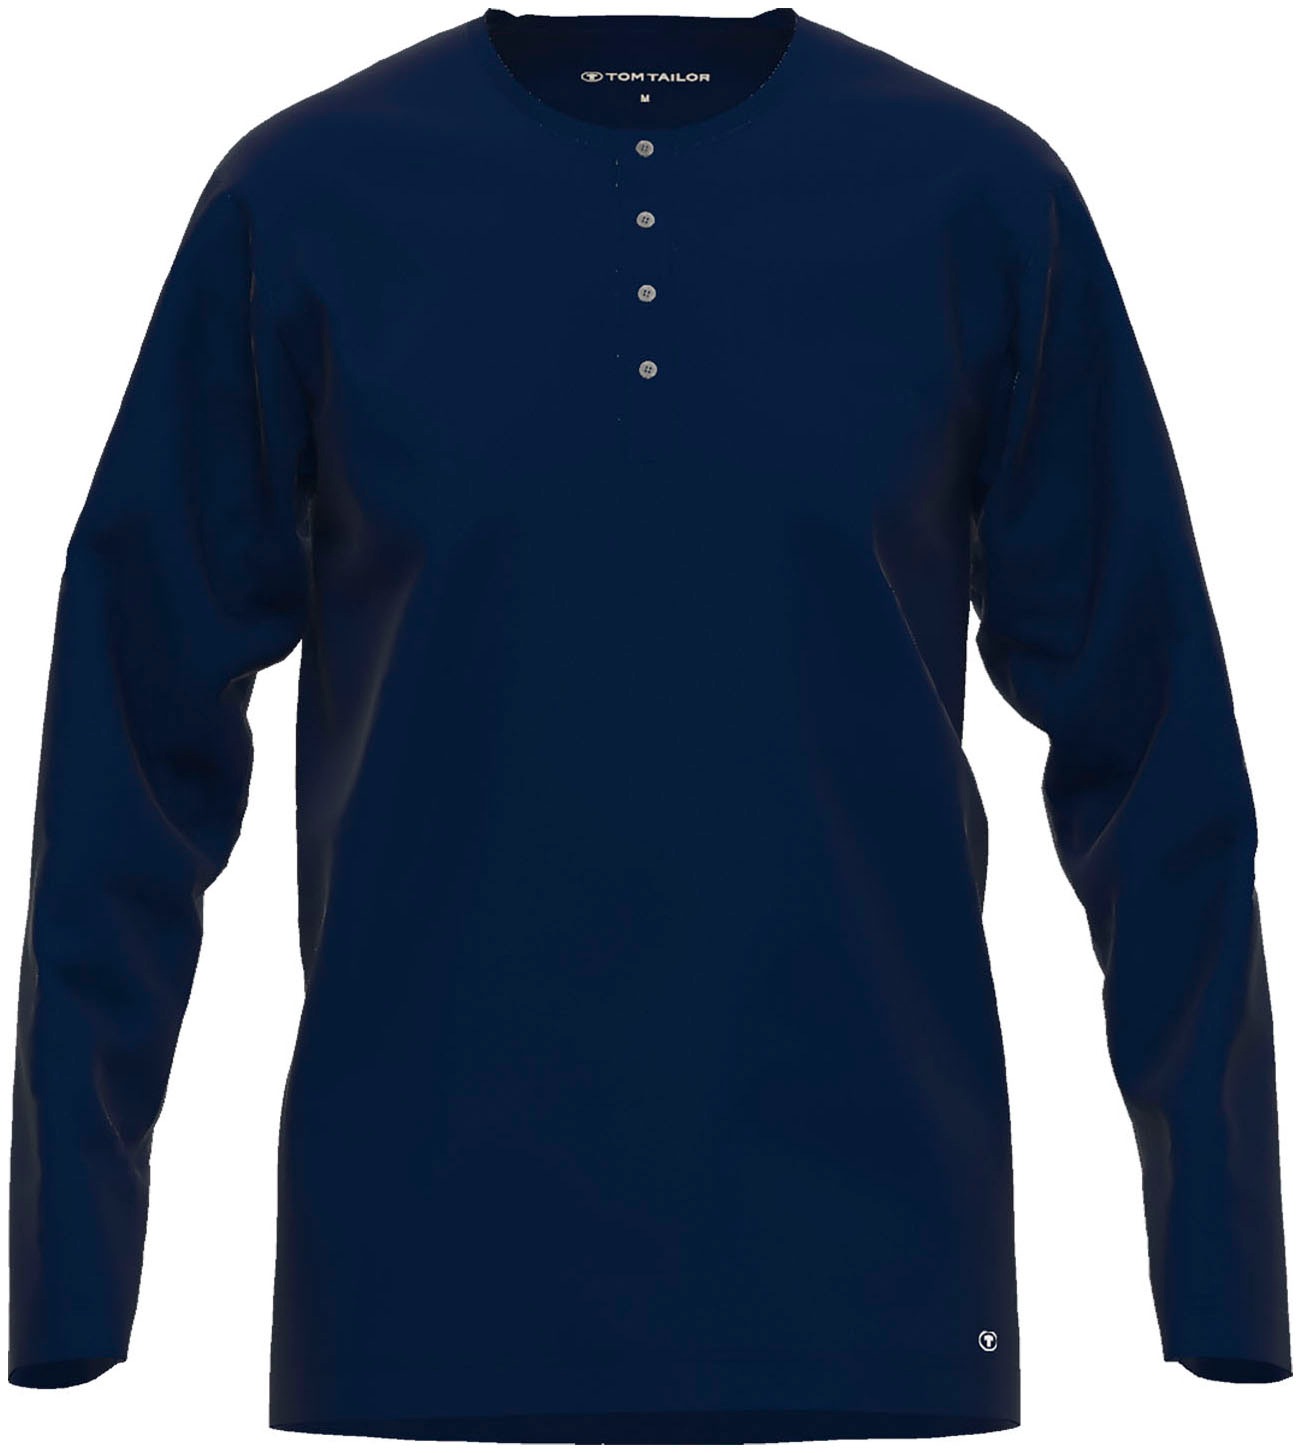 Tom Tailor Poloshirts & Shirts für Herren kaufen | BAUR